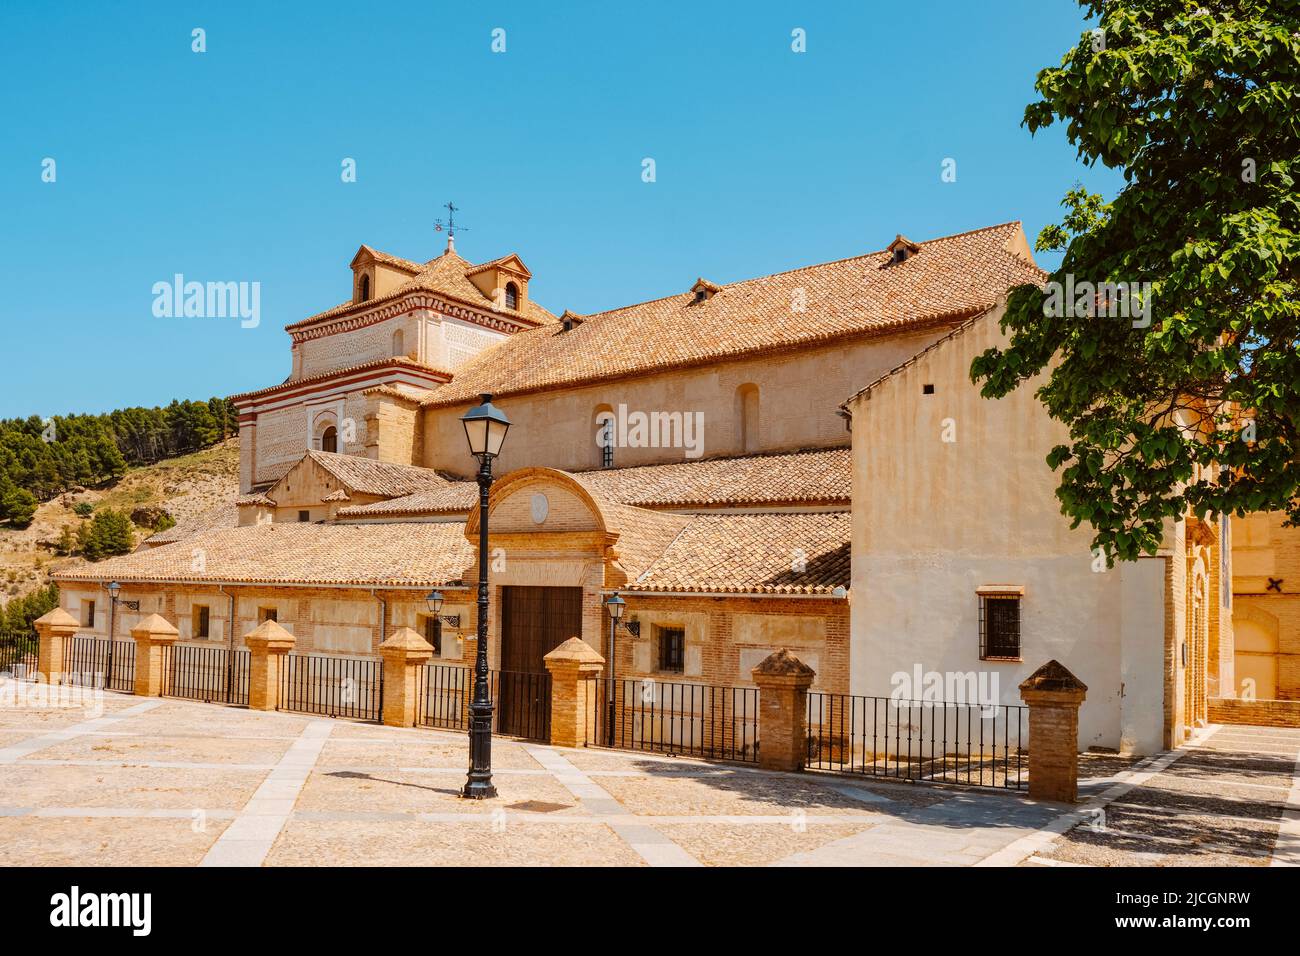 Una vista laterale della chiesa di Iglesia del Carmen ad Antequera, in provincia di Malaga, in Spagna Foto Stock